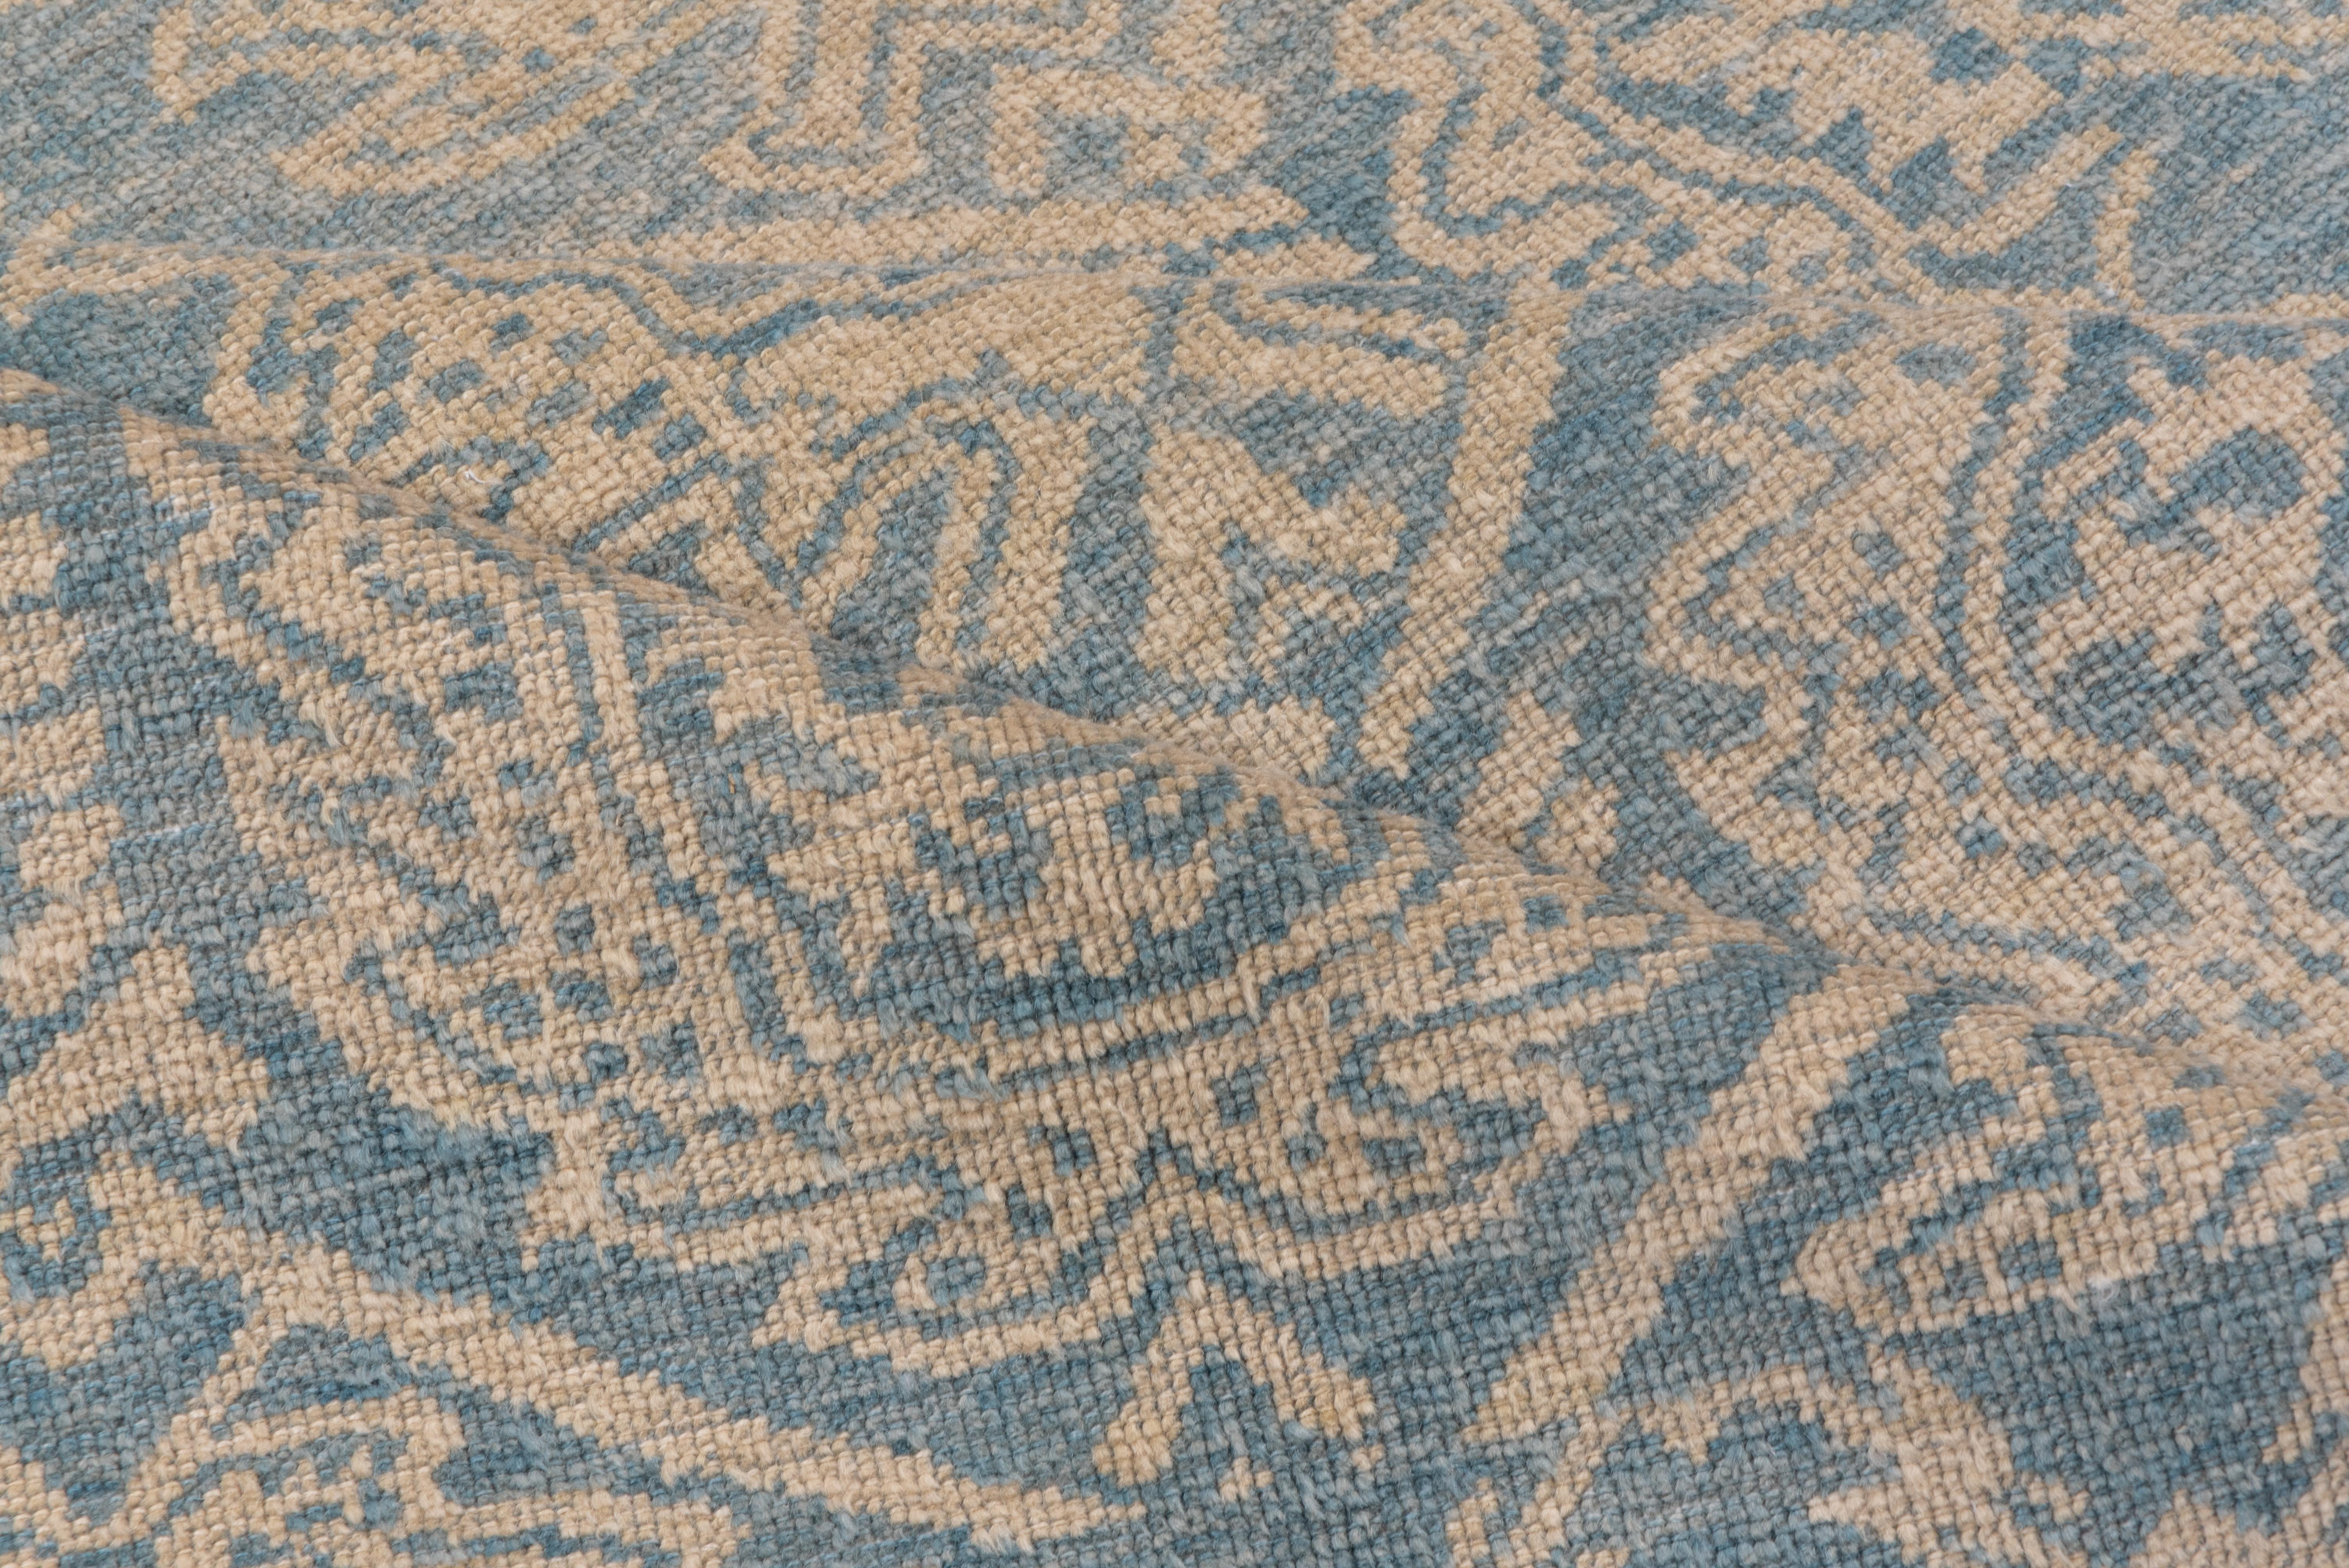 Dieser wahrscheinlich spanische Teppich aus Cuenca (um 1500) zeigt ein versetztes Kranz- und Skelettpalmetten-Allover-Muster auf dunkelblauem Grund innerhalb eines sechseckigen Spaliers, das mit Stroh akzentuiert ist. Die passende blaue Umrandung